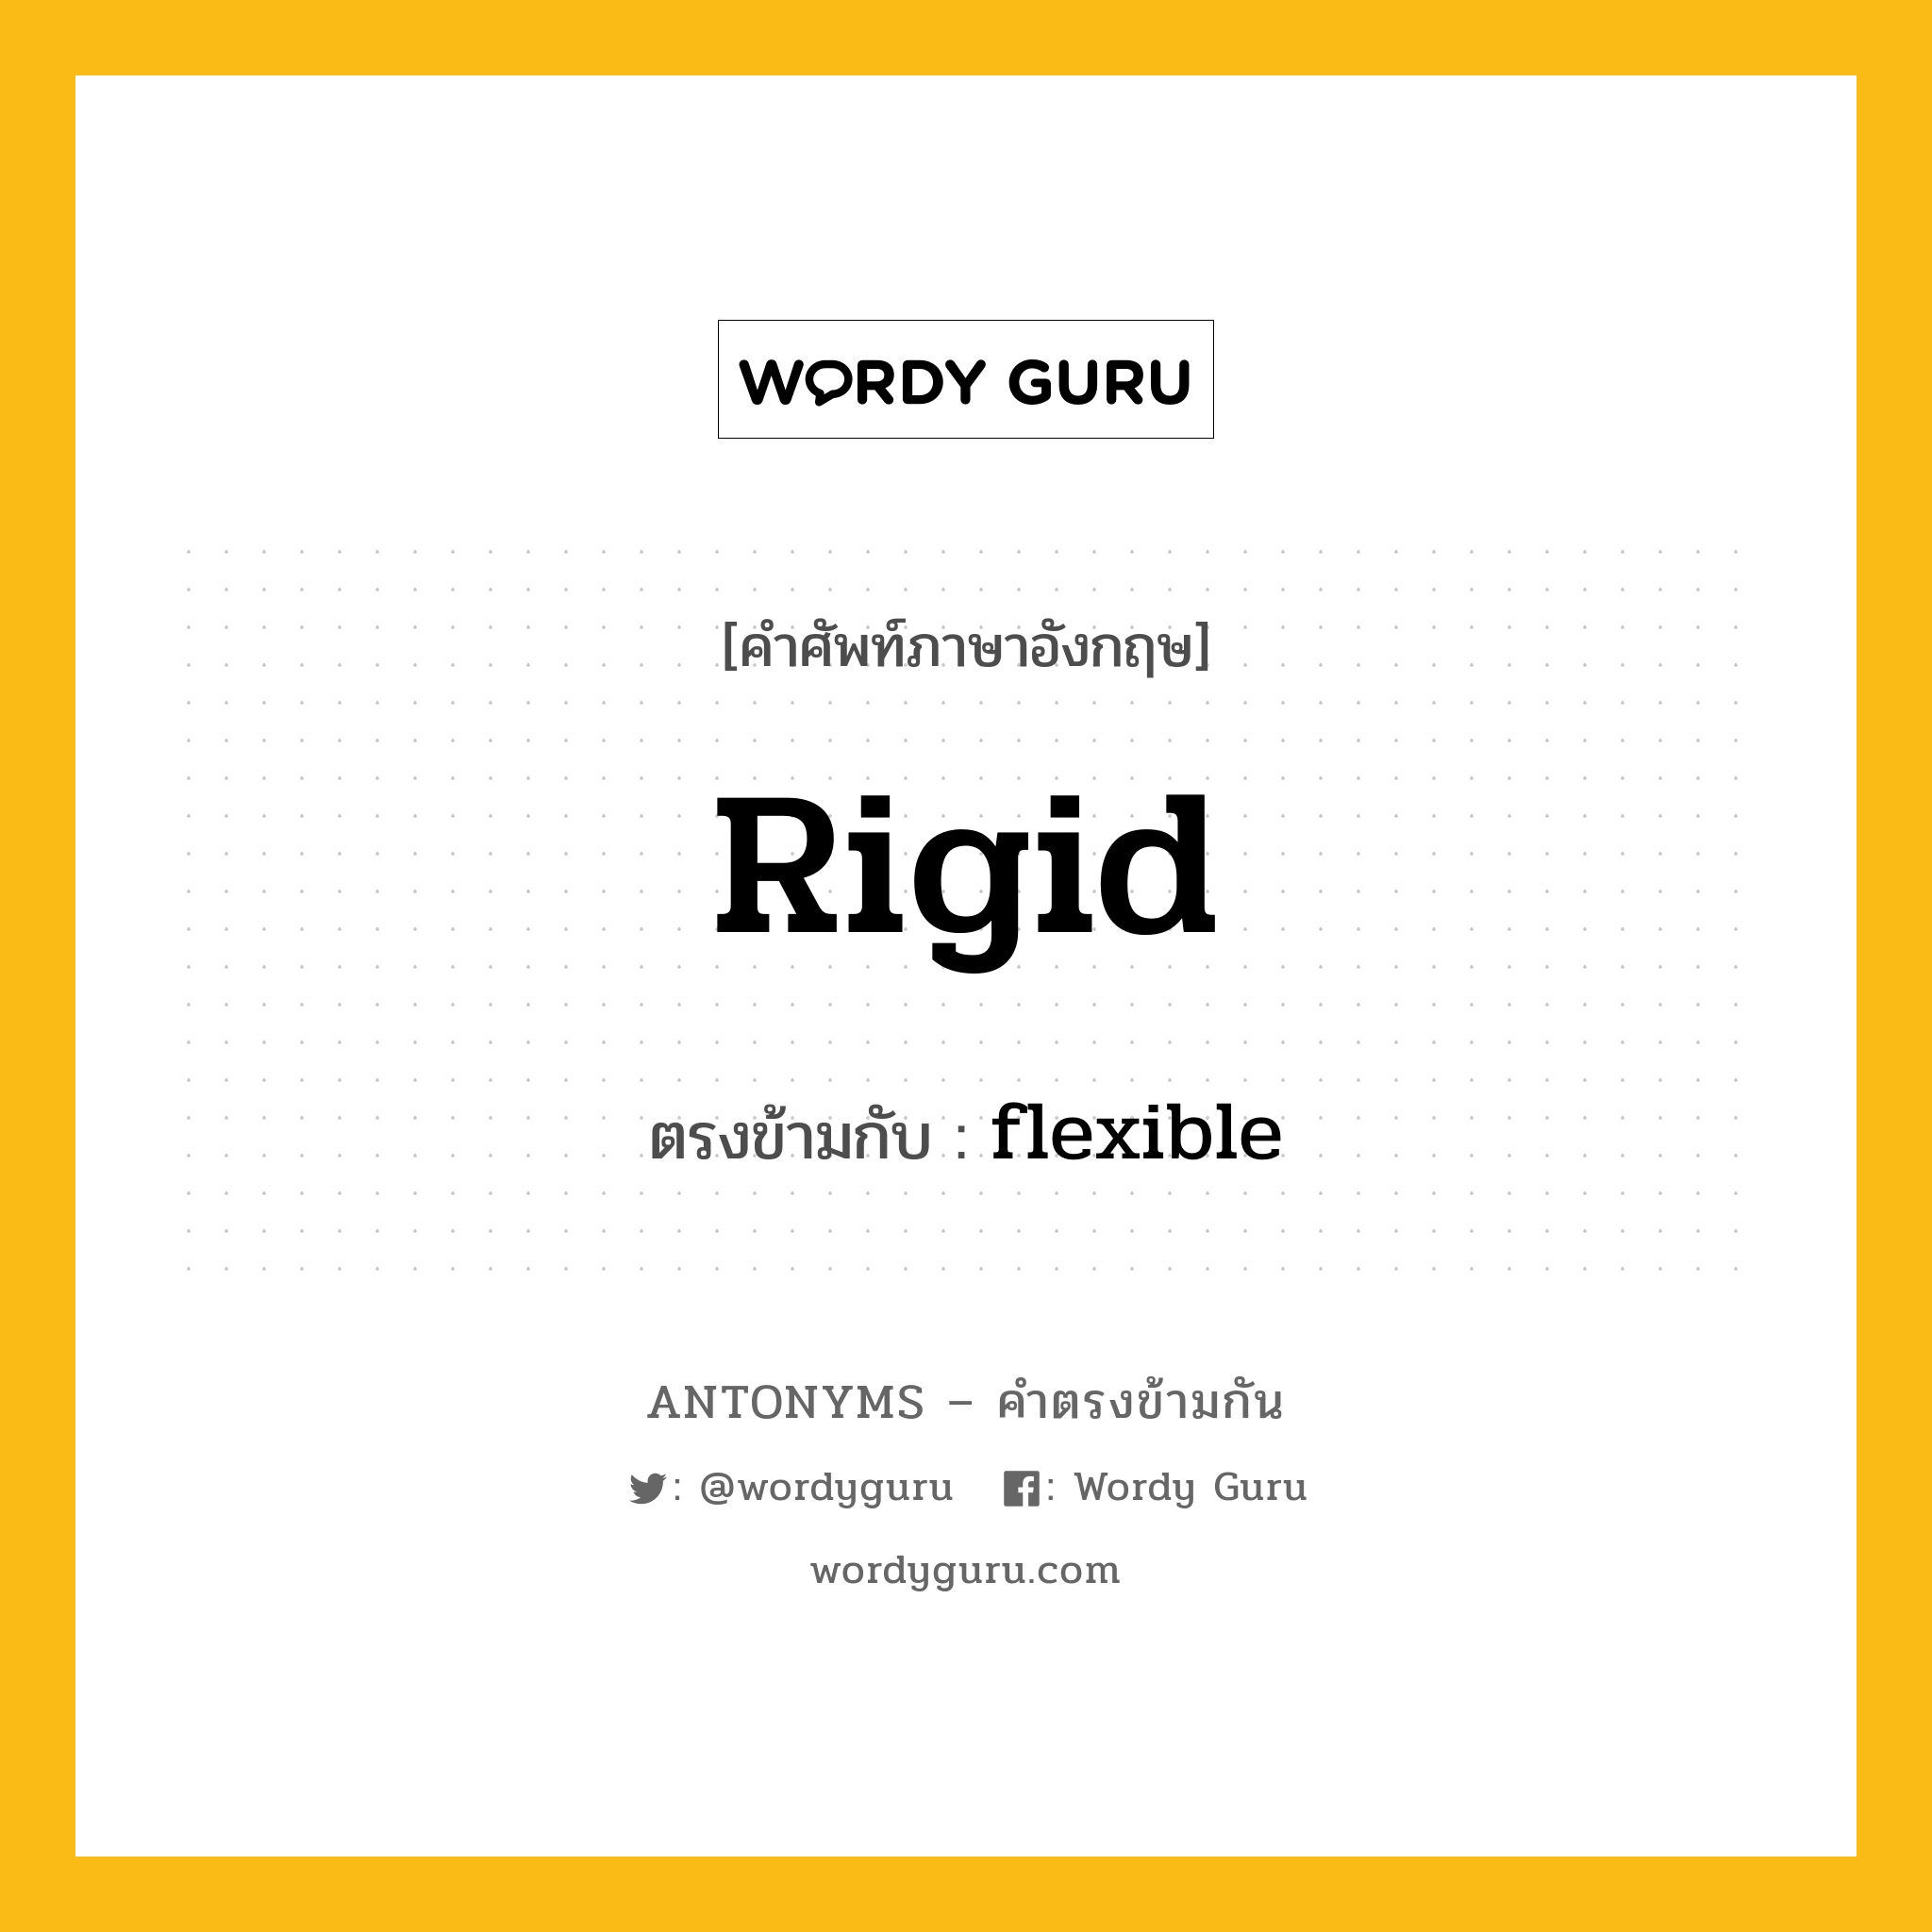 rigid เป็นคำตรงข้ามกับคำไหนบ้าง?, คำศัพท์ภาษาอังกฤษ rigid ตรงข้ามกับ flexible หมวด flexible